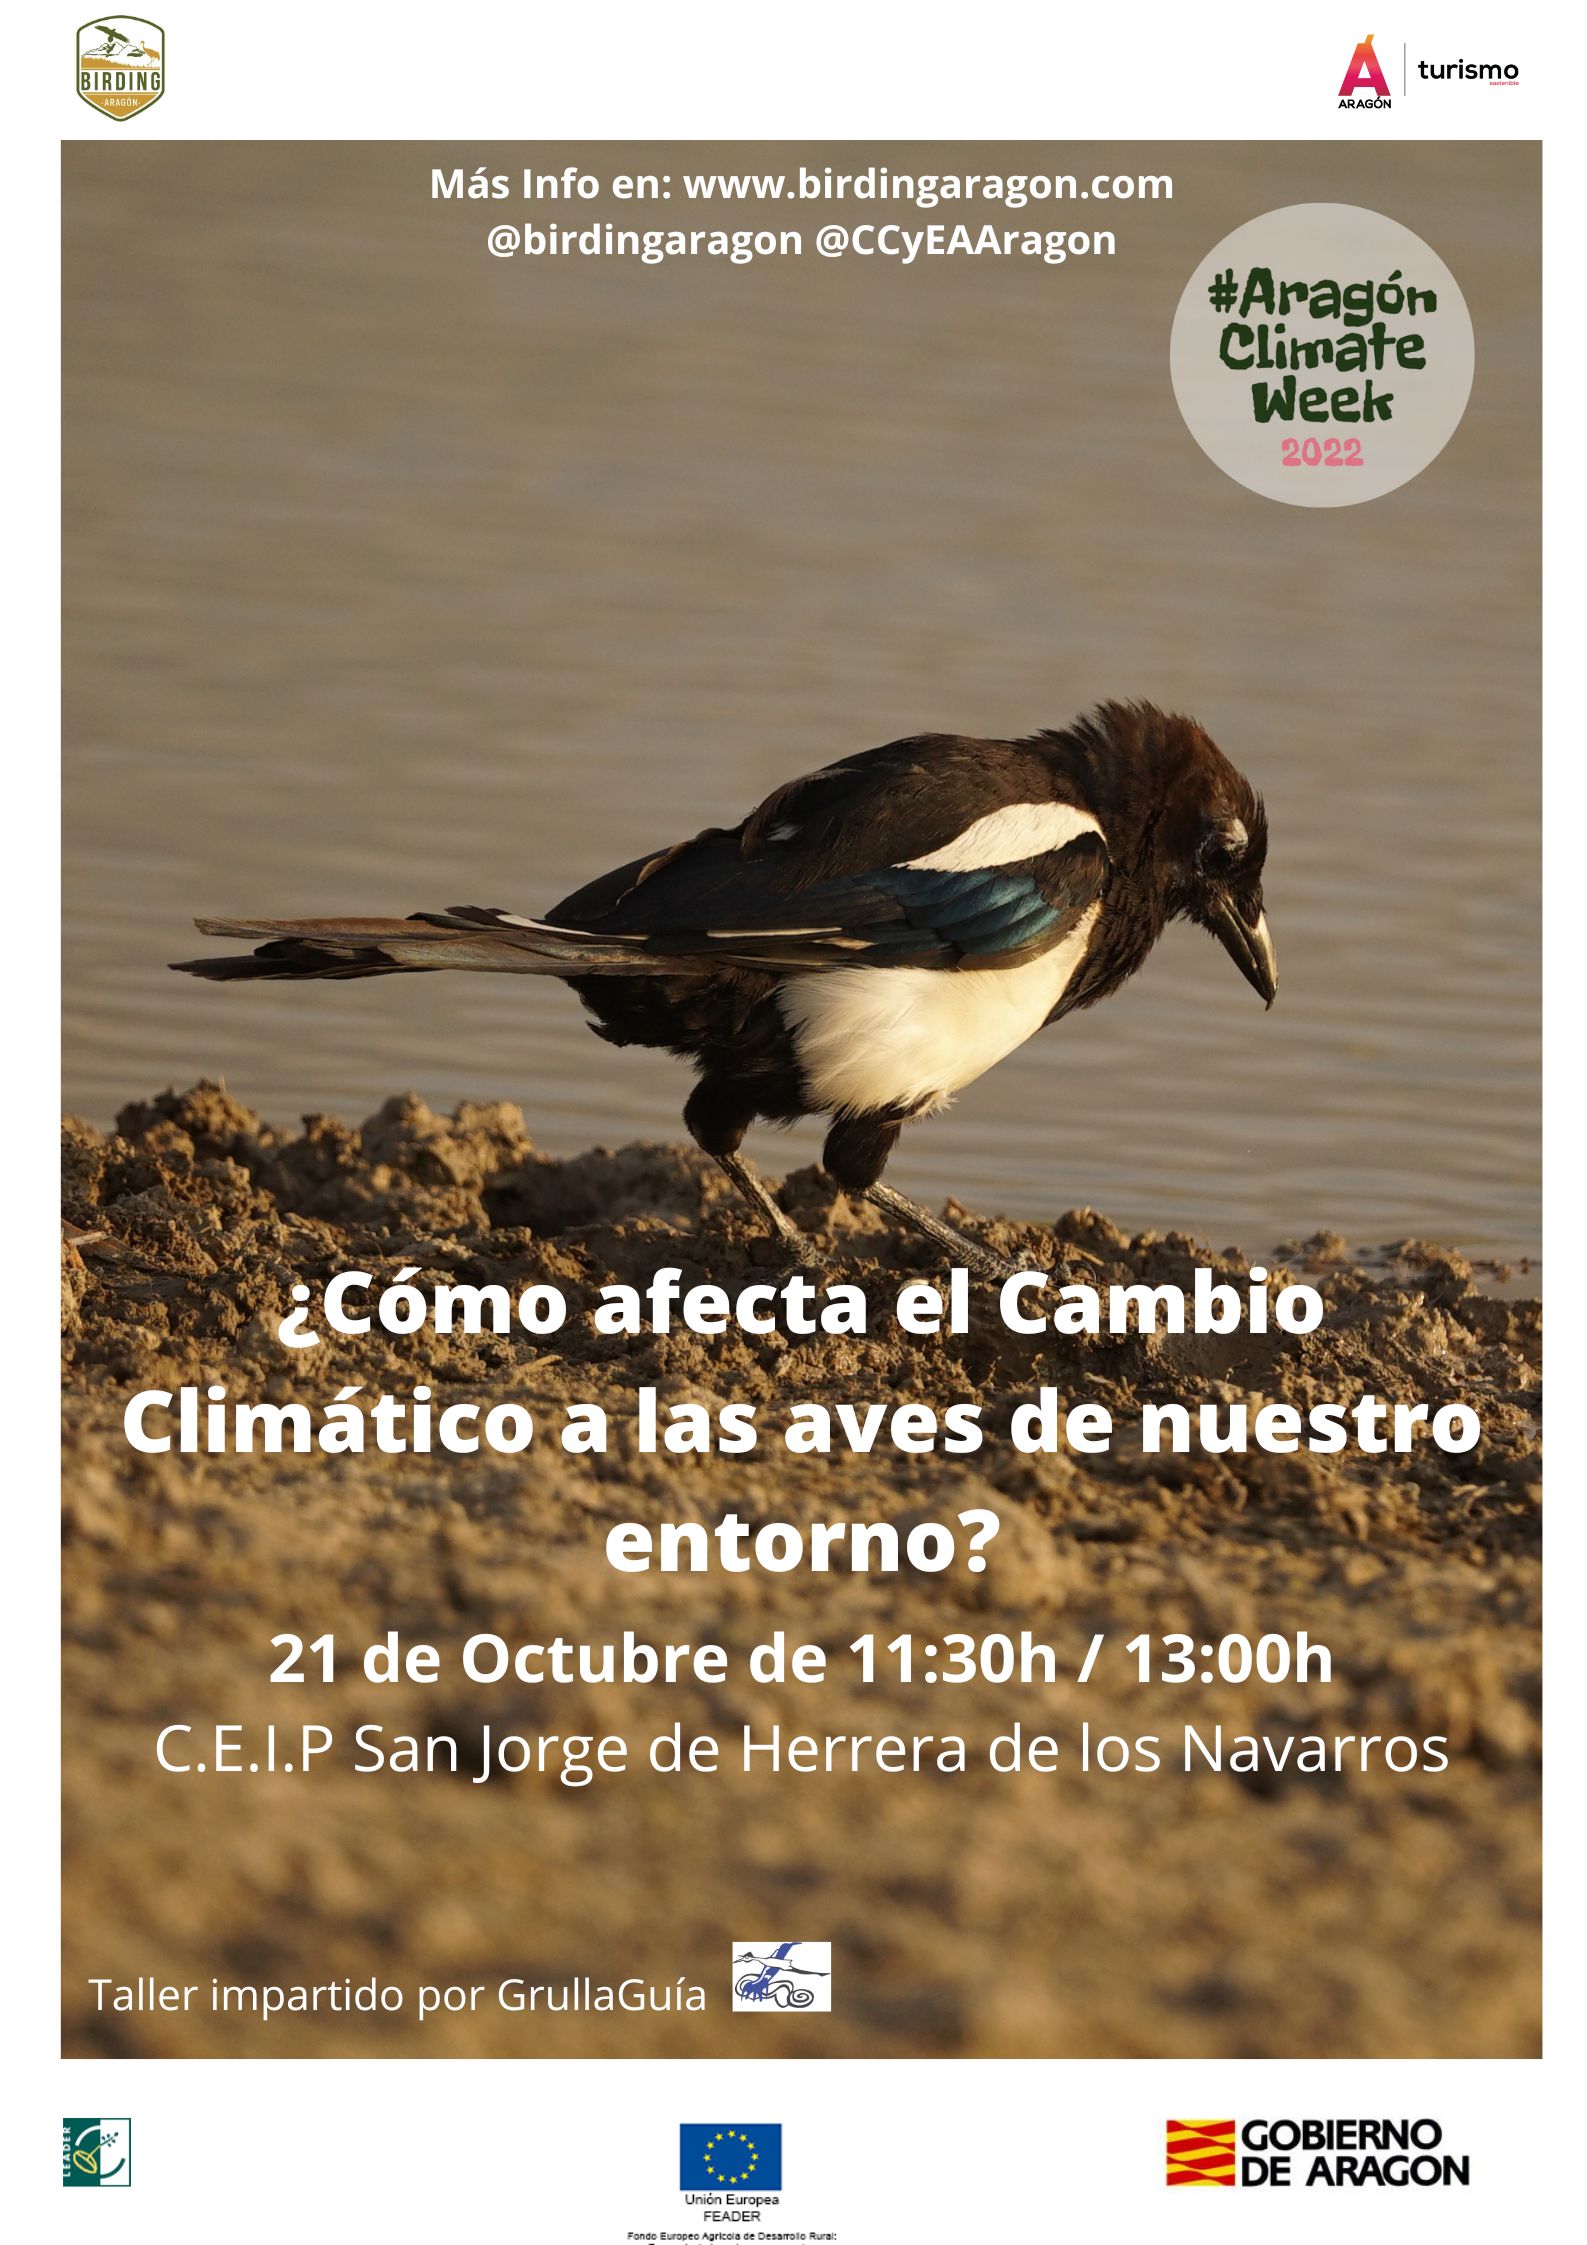 Birding Aragón participa en la II Aragon Climate Week